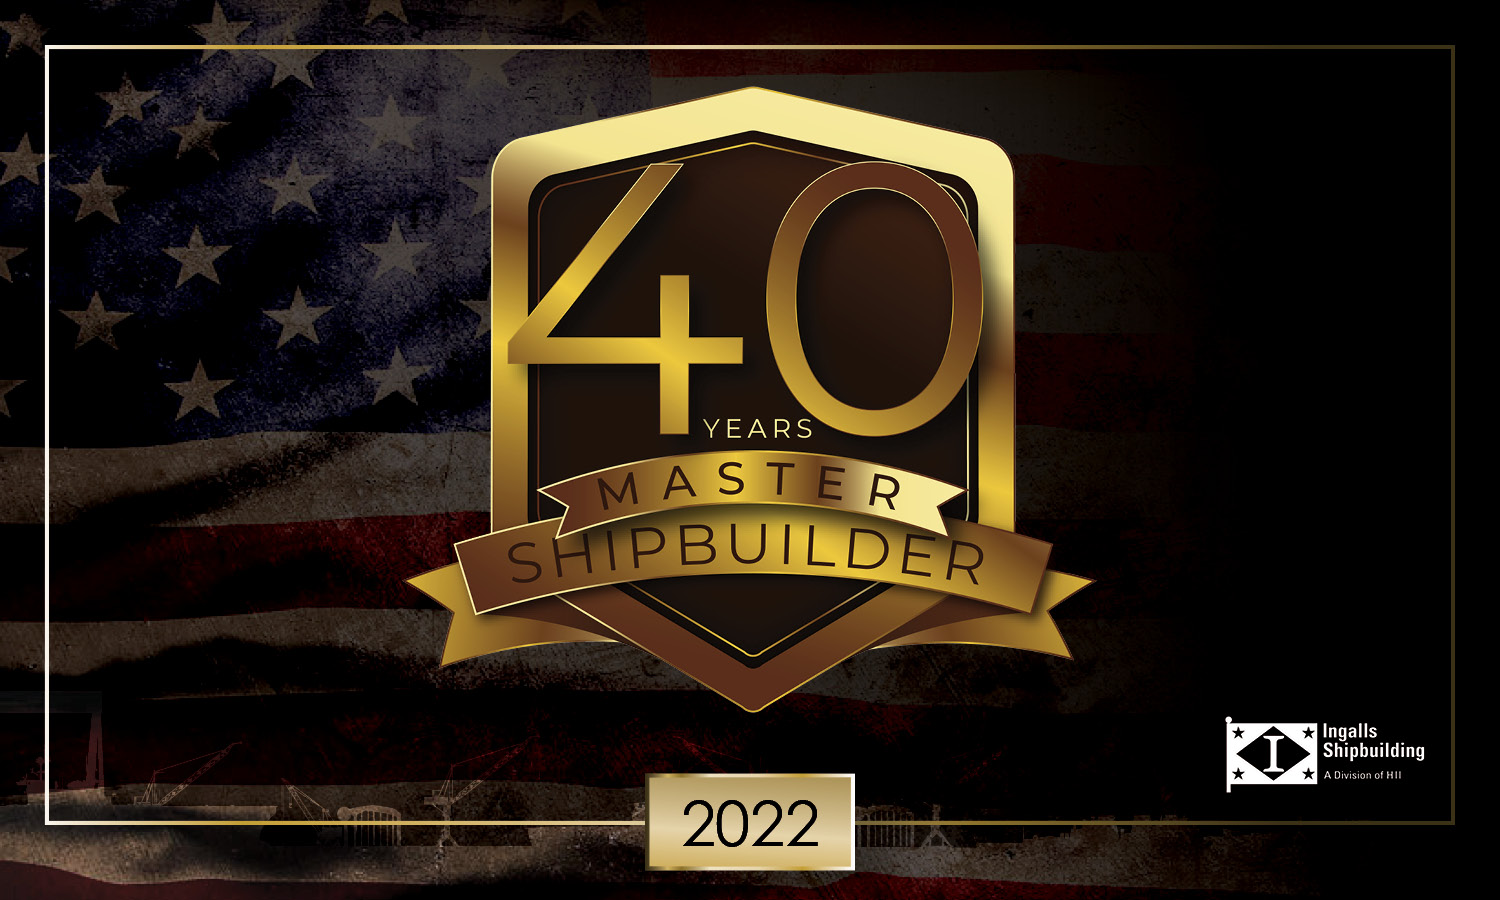 Master Shipbuilder 2022 - Ingalls